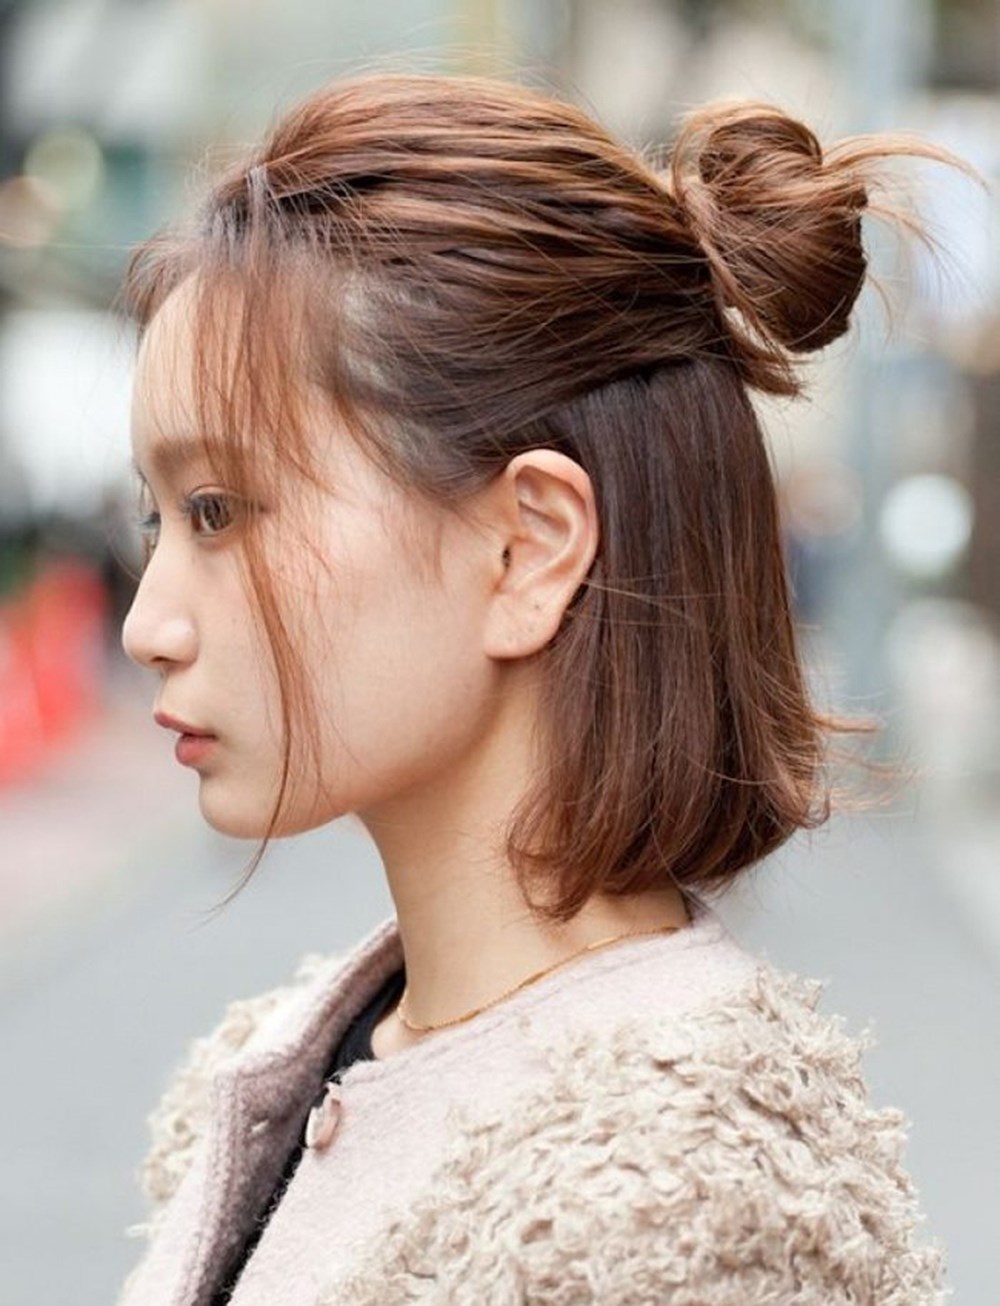 Nếu bạn yêu thích kiểu tóc xoăn, thì búi tóc củ tỏi Hàn Quốc sẽ là một lựa chọn tuyệt vời. Hãy xem hình ảnh thật đẹp và học cách tạo kiểu tóc này để tỏa sáng với vẻ đẹp tươi trẻ của mình.